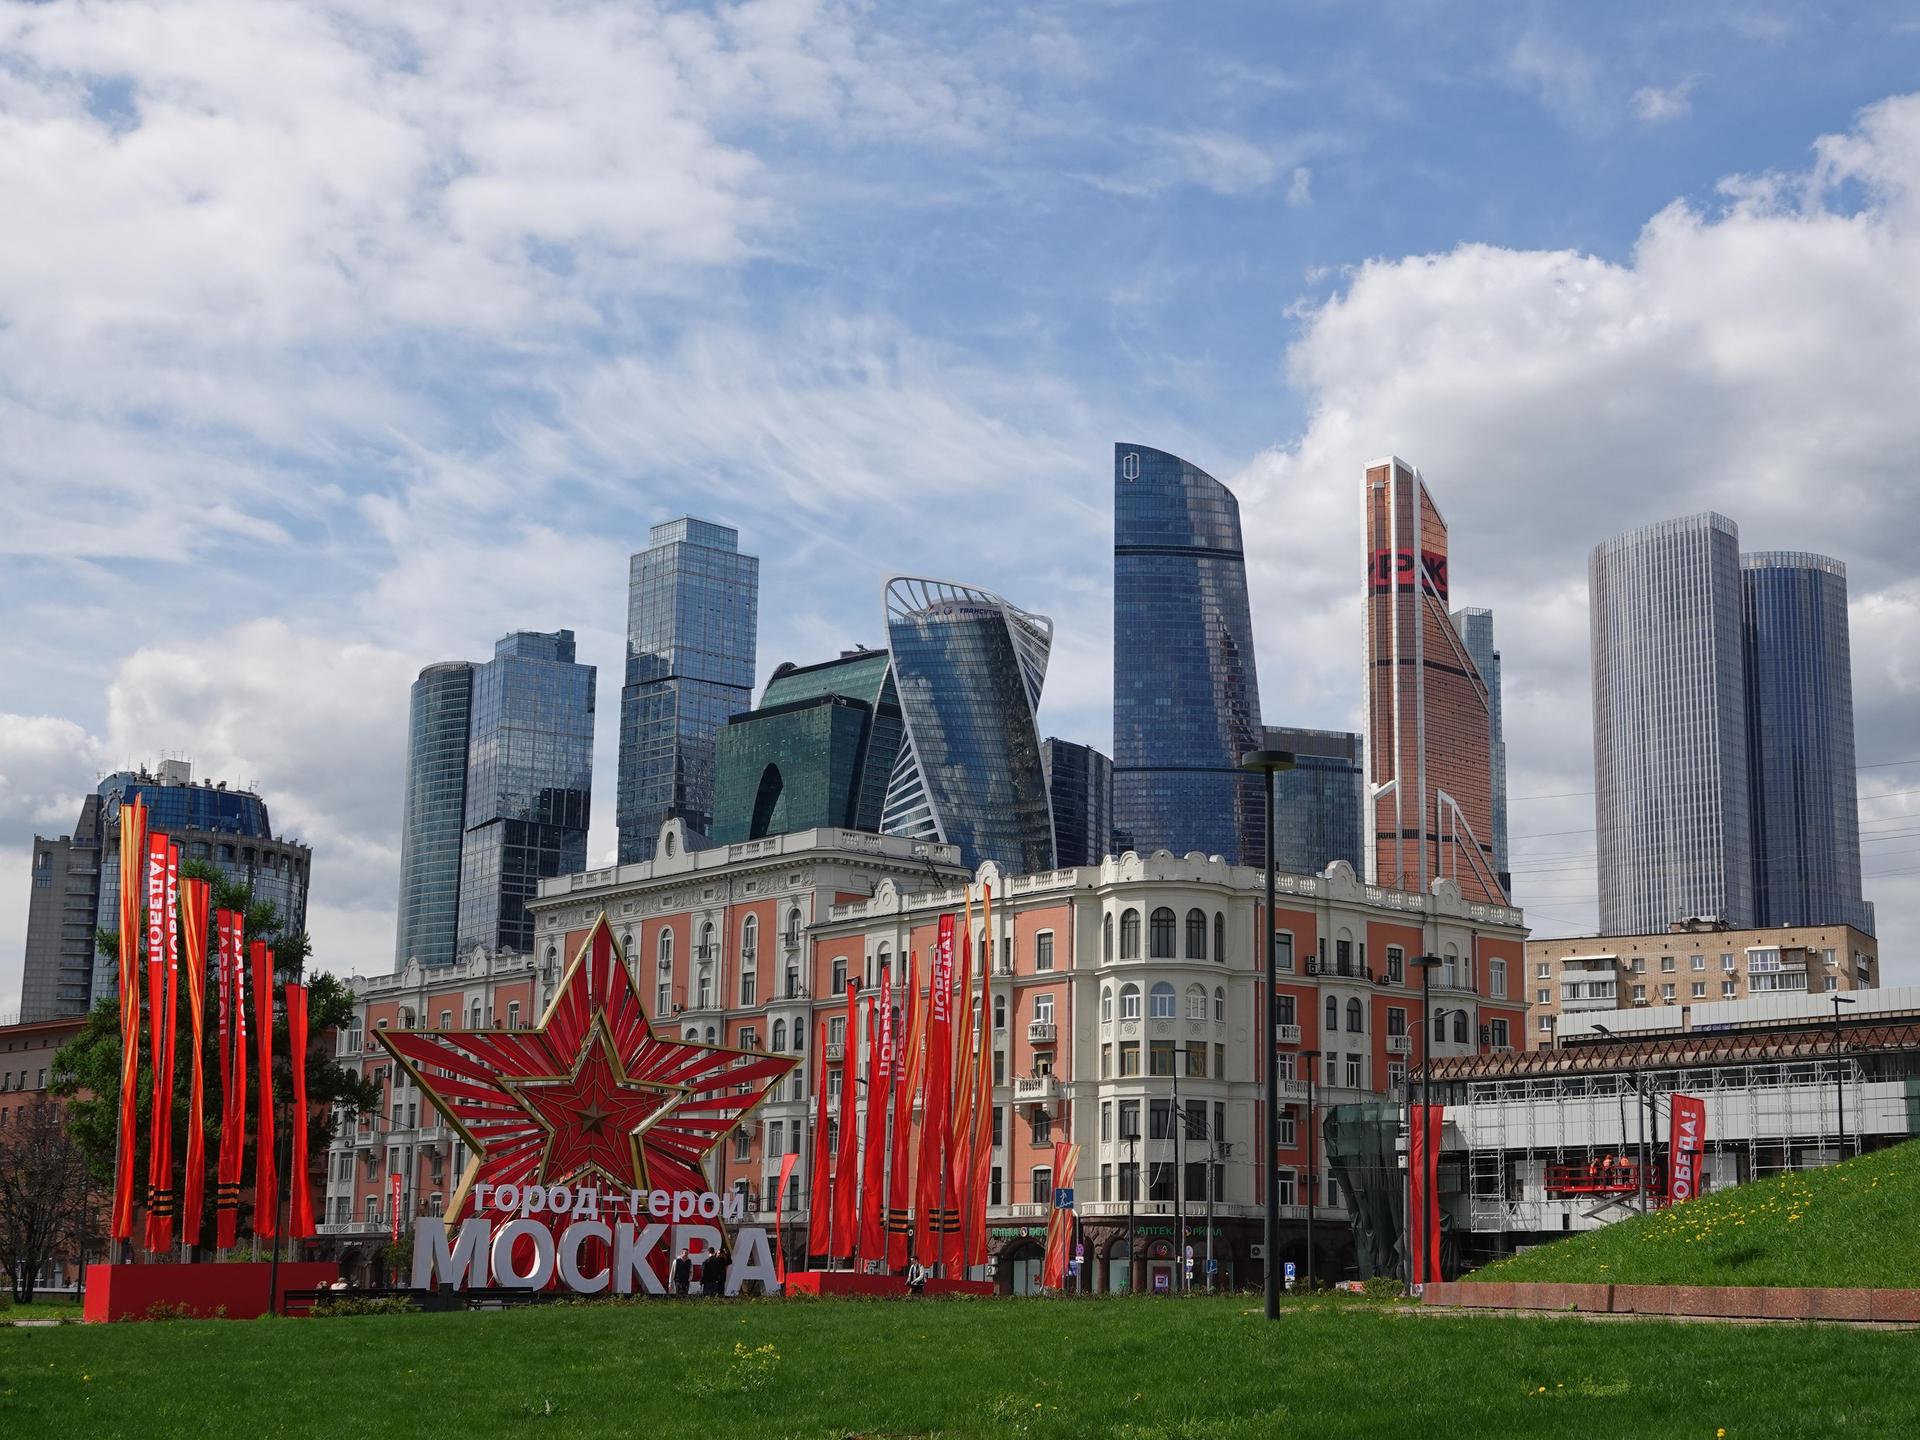 Die russische Hauptstadt bereitet sich auf den Tag des Sieges am 9. Mai vor. Zu sehen sind rote Fahnen mit der Aufschrift Pobeda! (auf Deutsch: Sieg) und ein Stern mit der offiziellen Bezeichnung Heldenstadt Moskau.